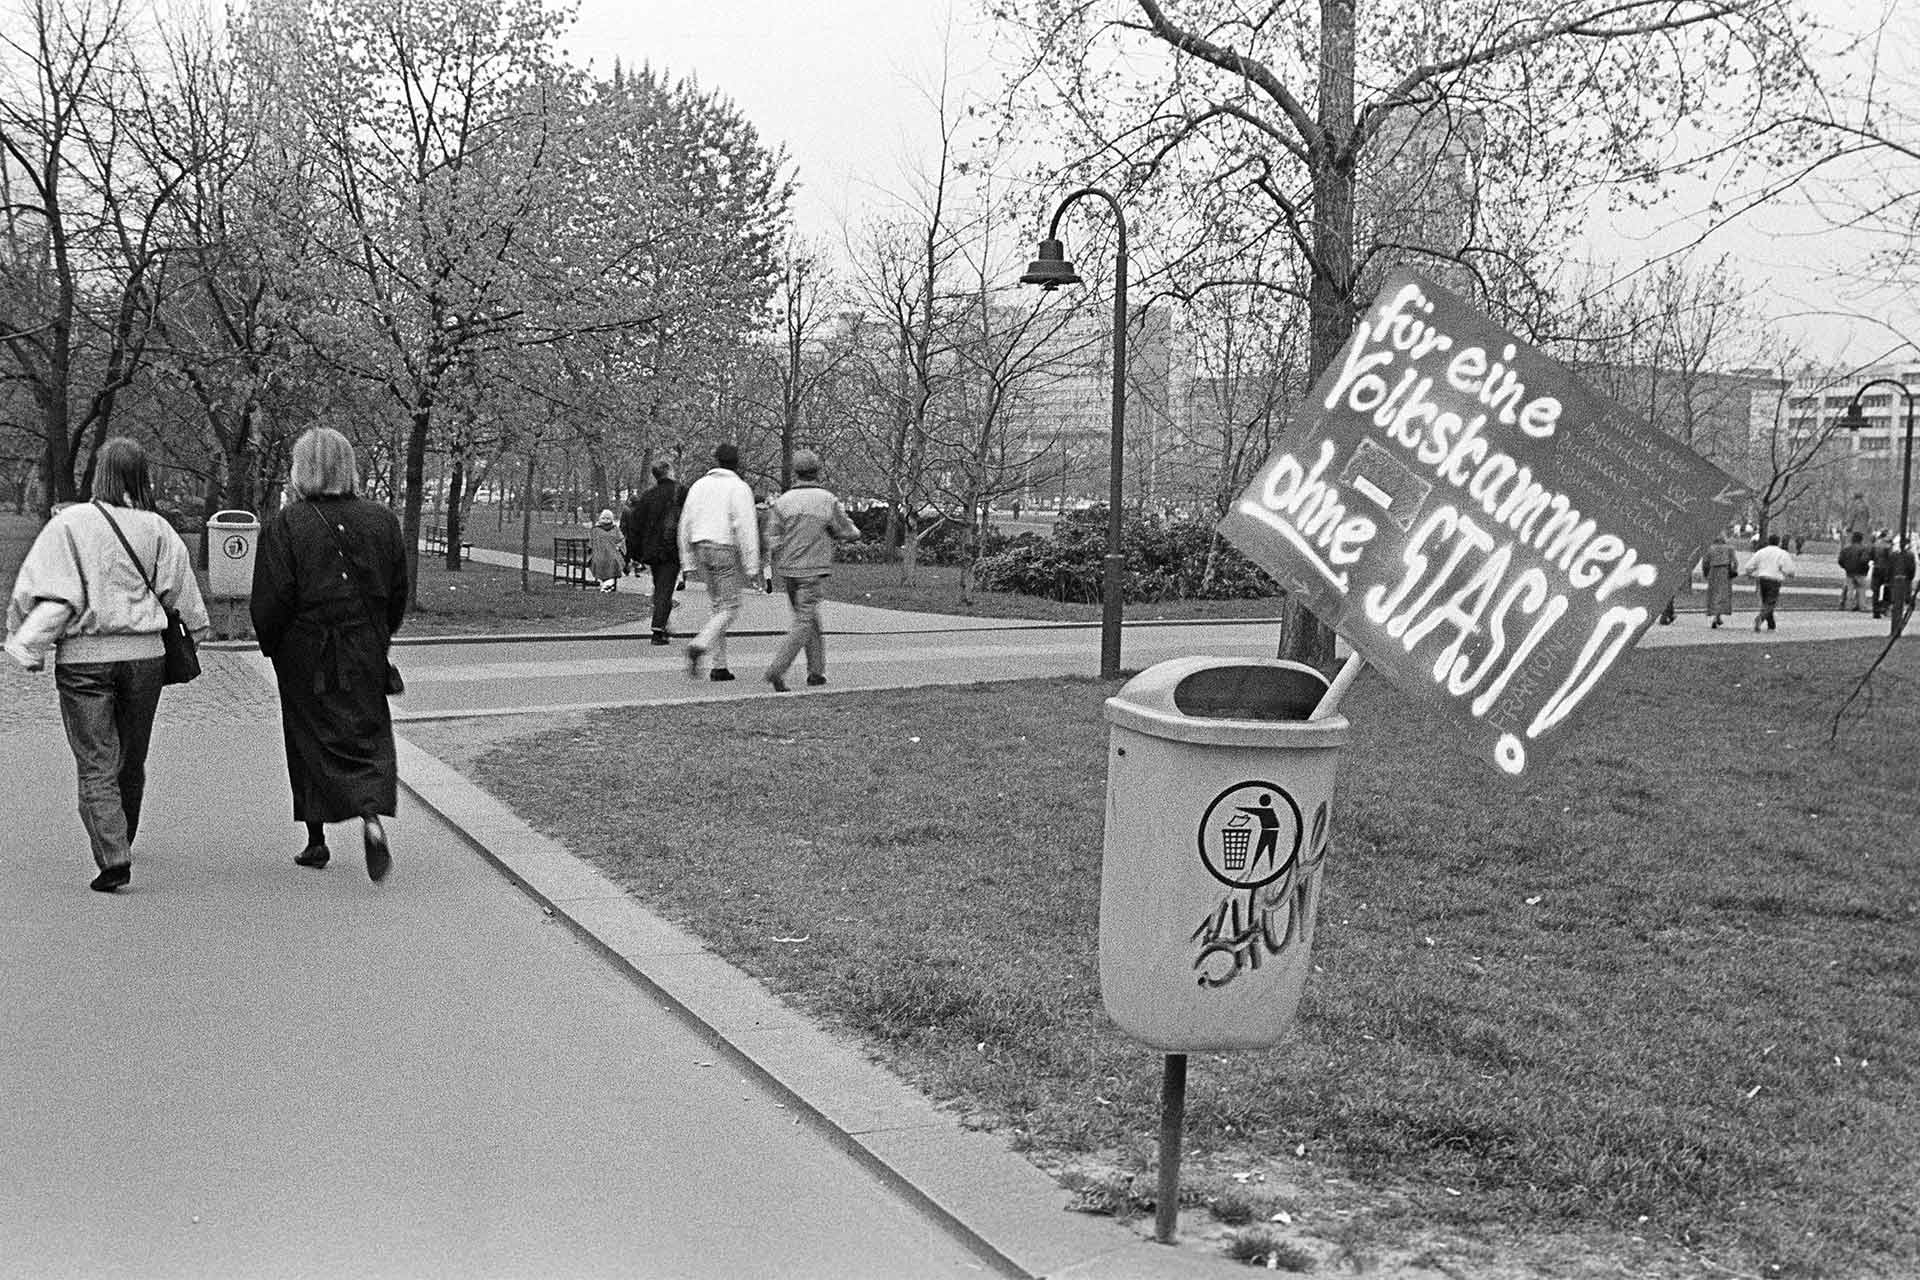 Protestplakat für eine Volkskammer ohne die Stasi.